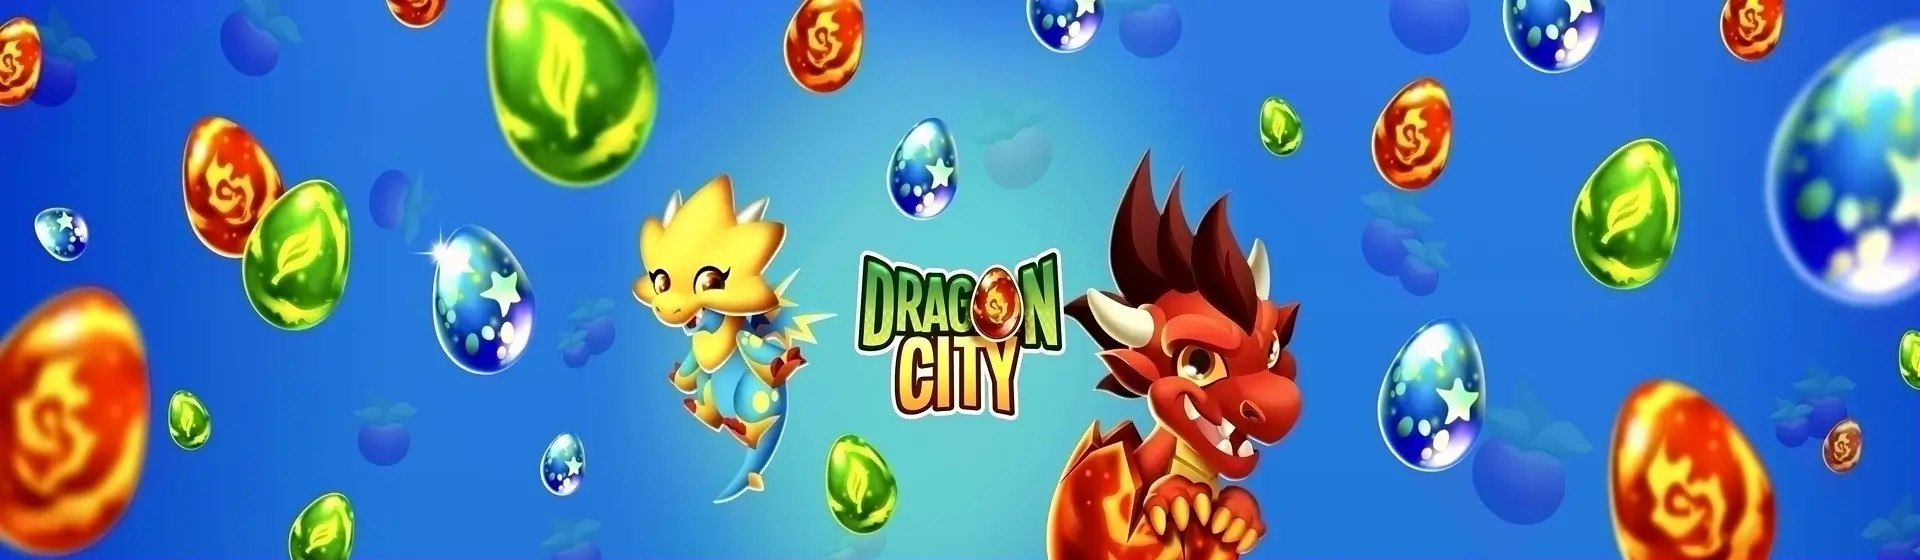 Baixar & Jogar Dragon City Mobile no PC & Mac (Emulador)